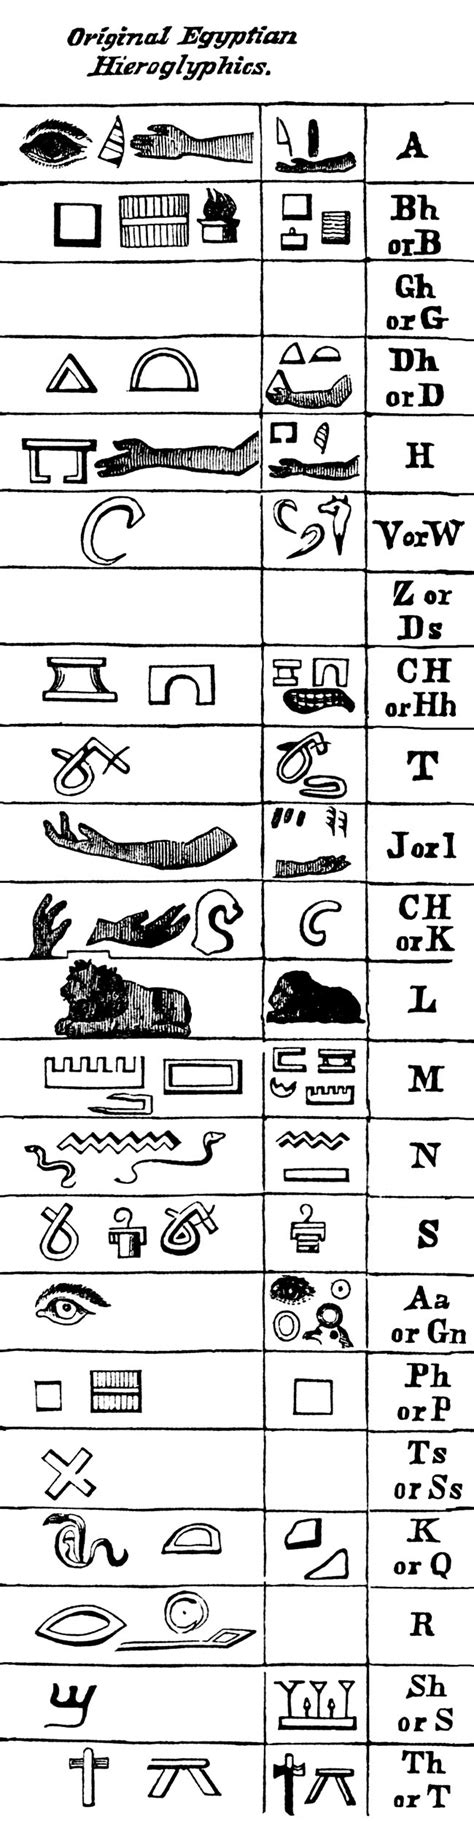 Egyptian Hieroglyphics Egyptian Hieroglyphics Ancient